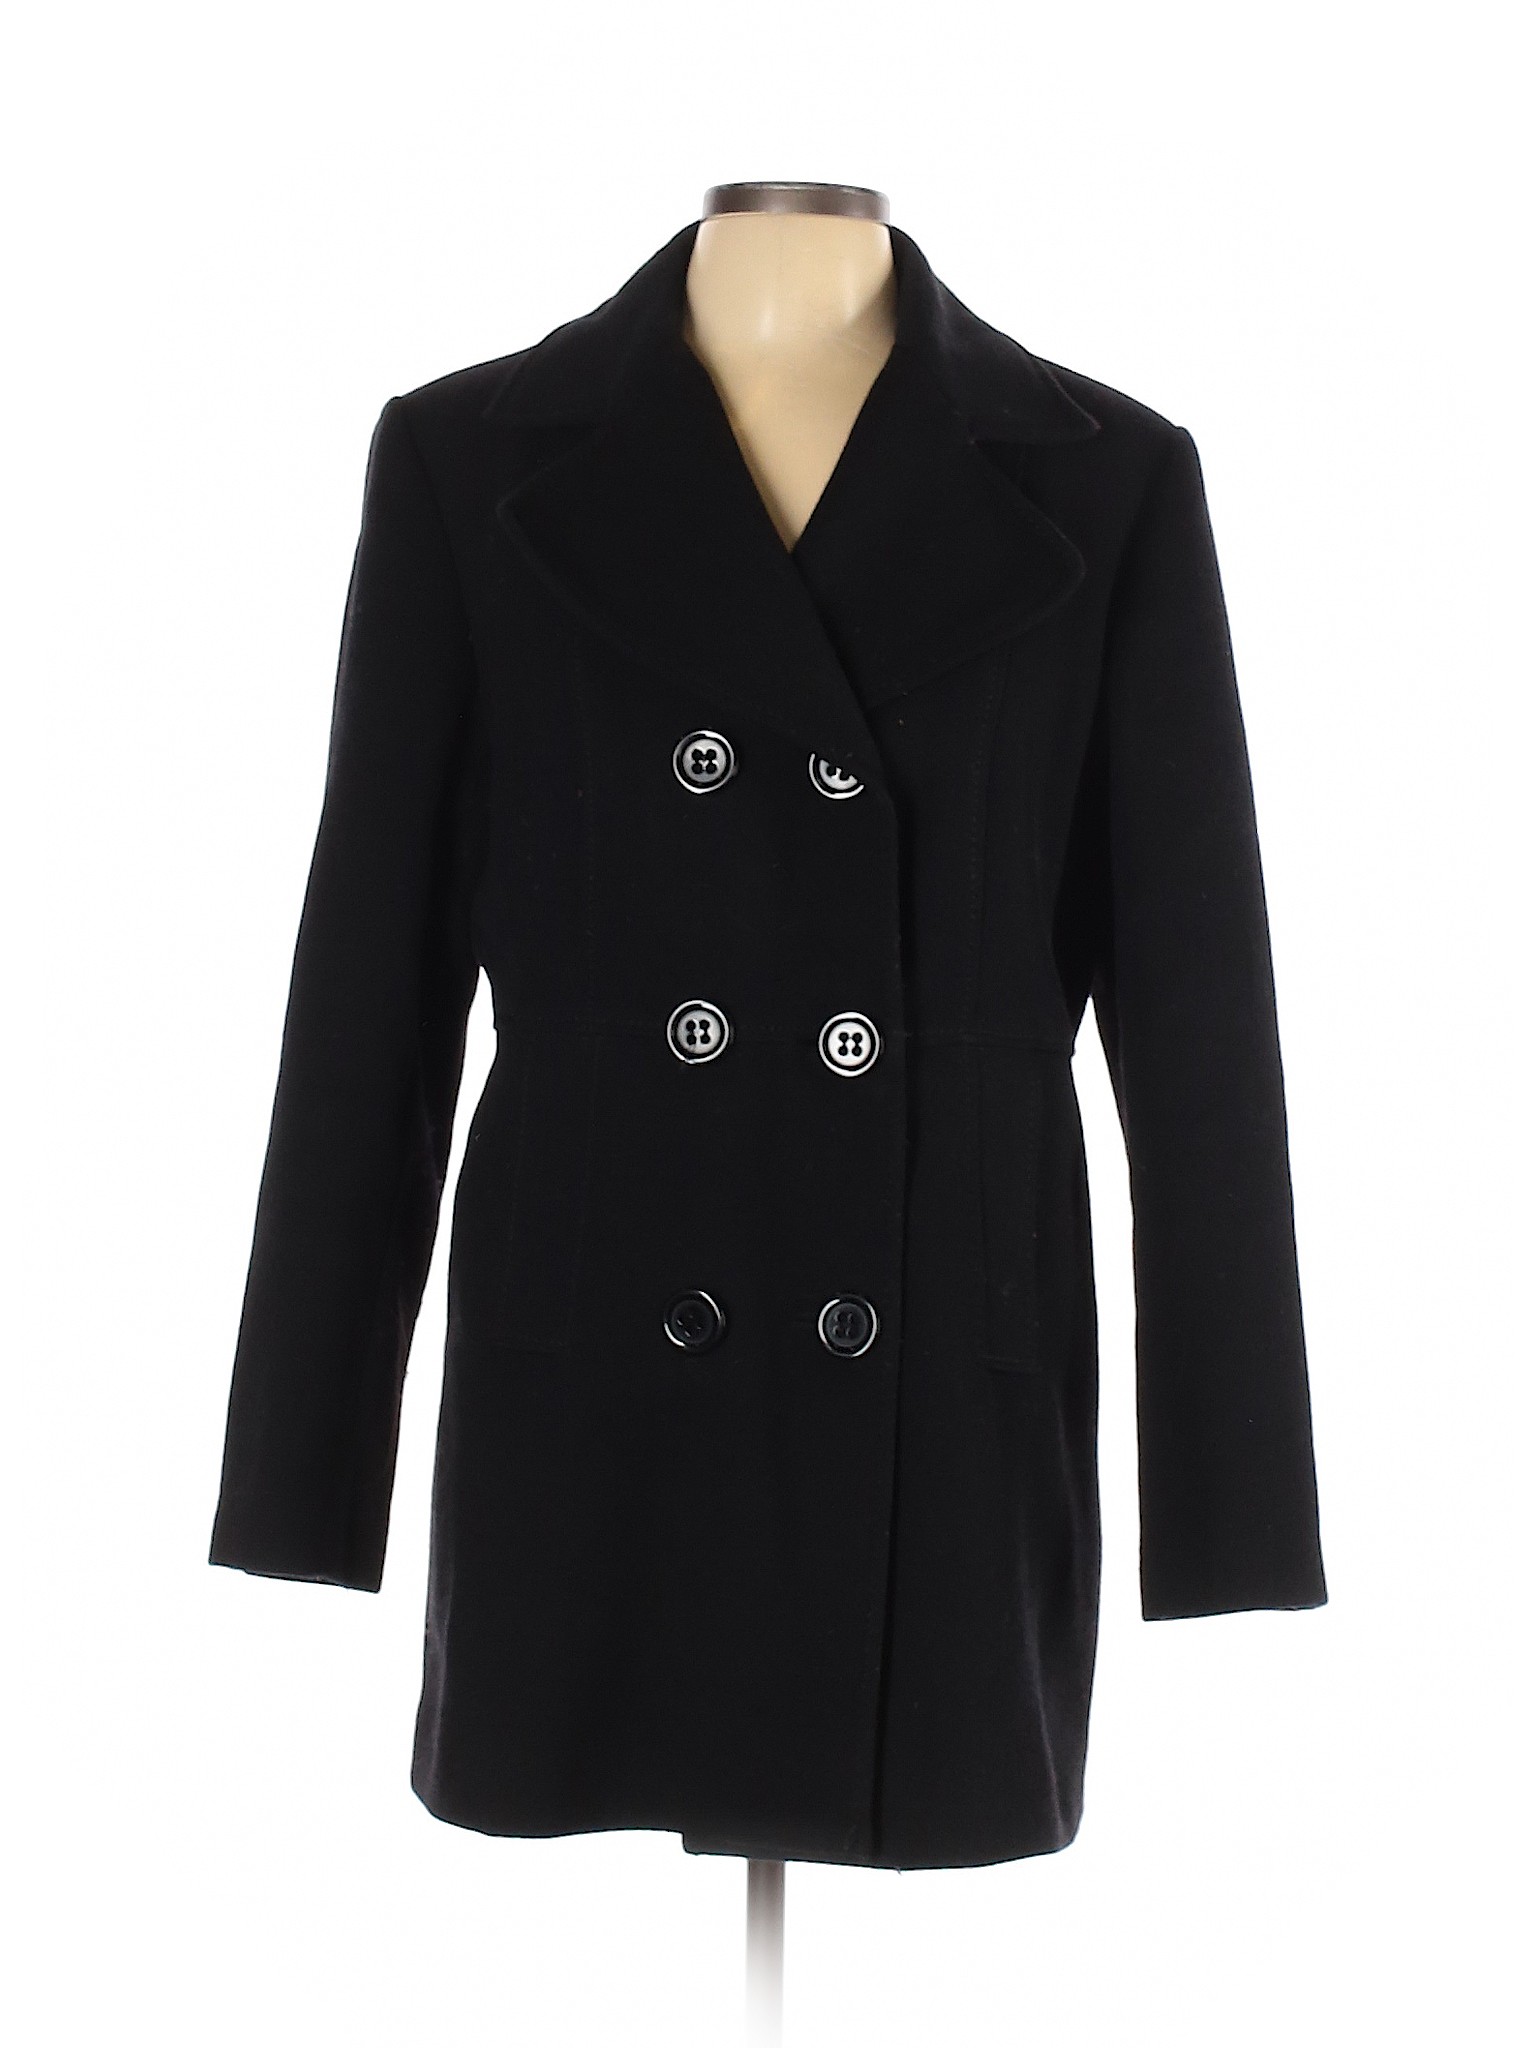 Croft & Barrow Women Black Wool Coat L | eBay